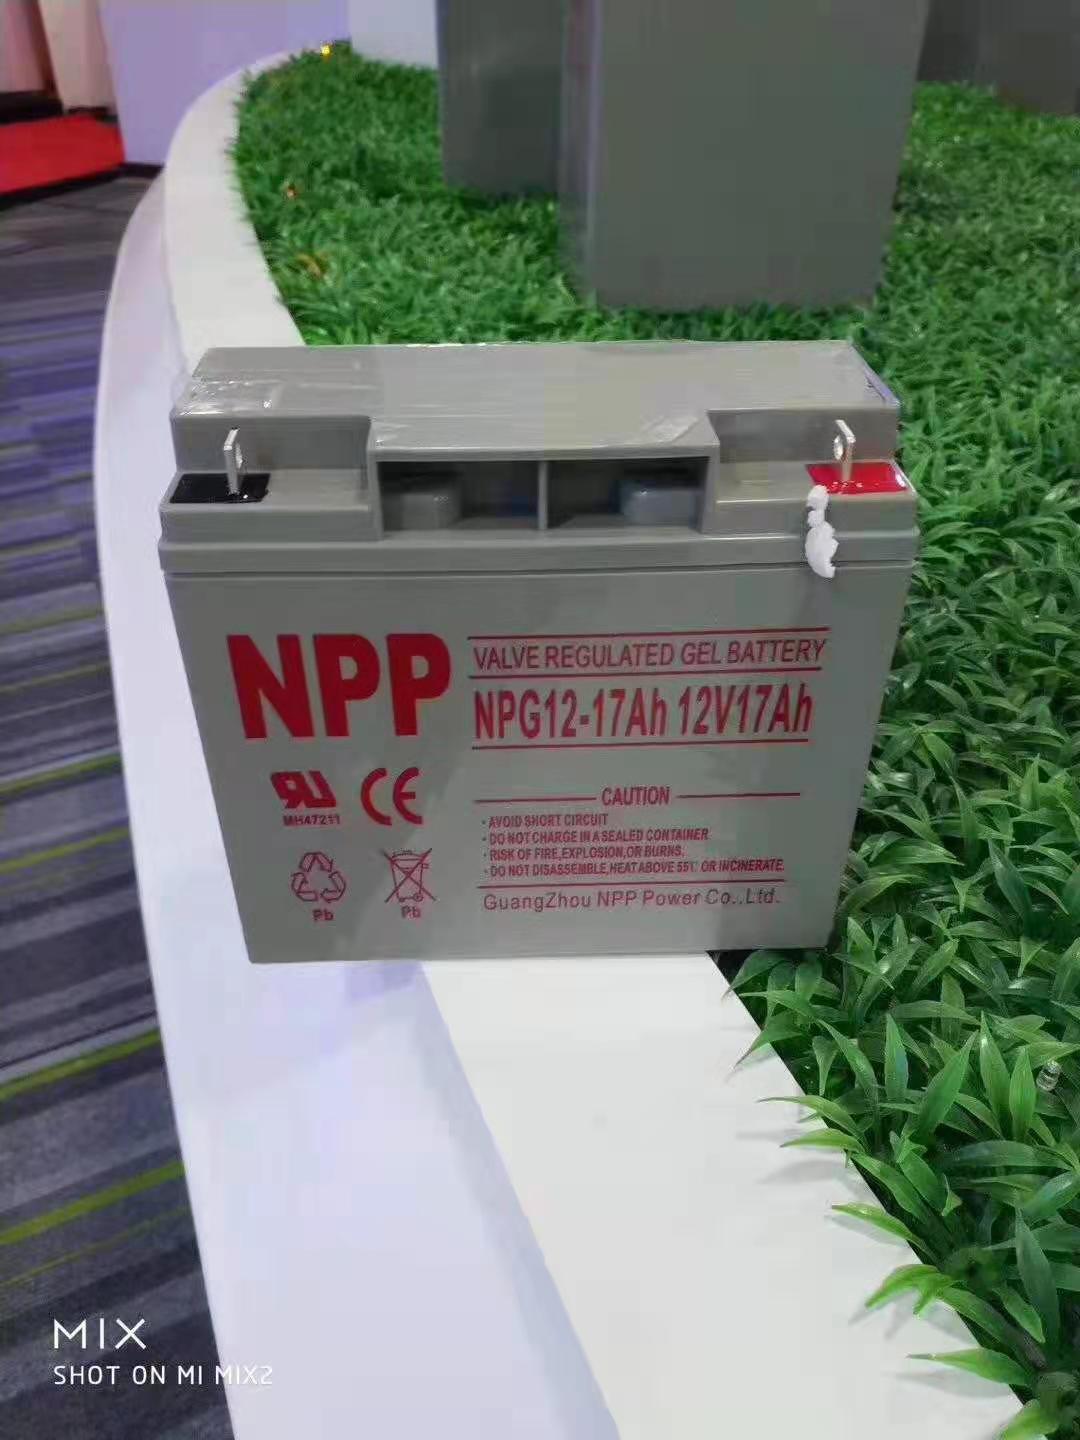 耐普蓄电池NPG12-65德州经销商